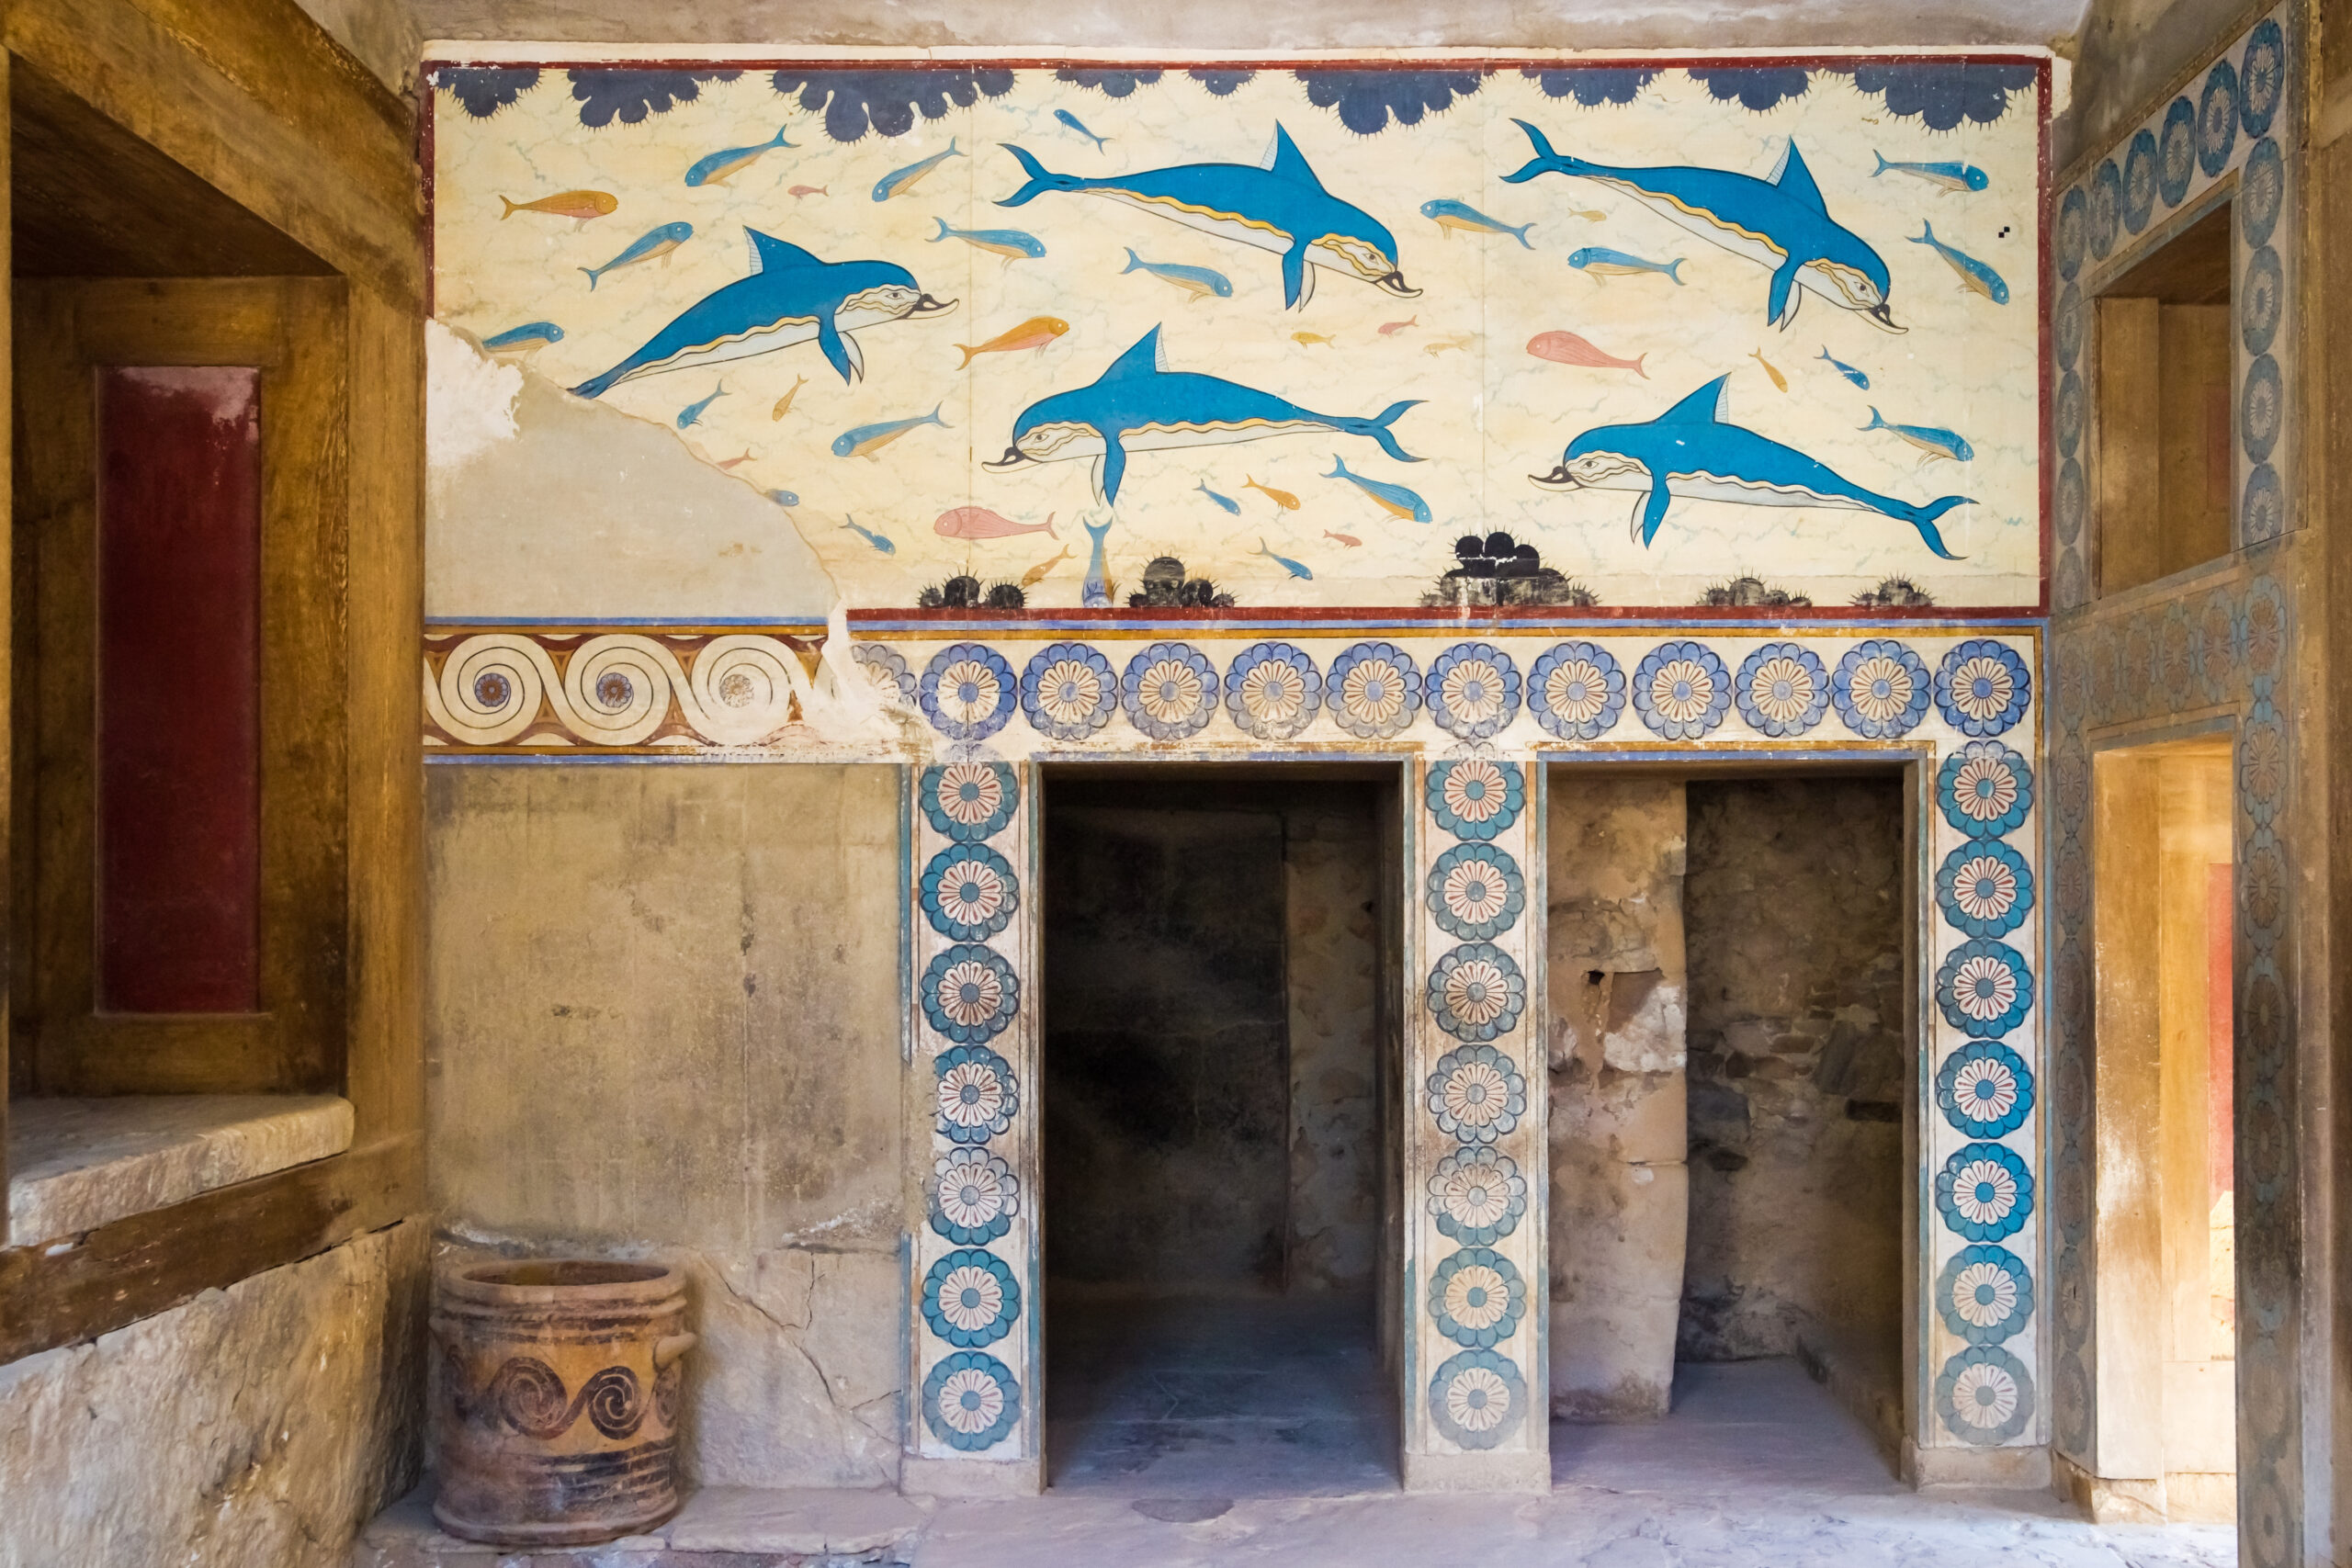 Palác Knossos na ostrove Kréta, Grécko - Dovolenka s CK Hydrotour